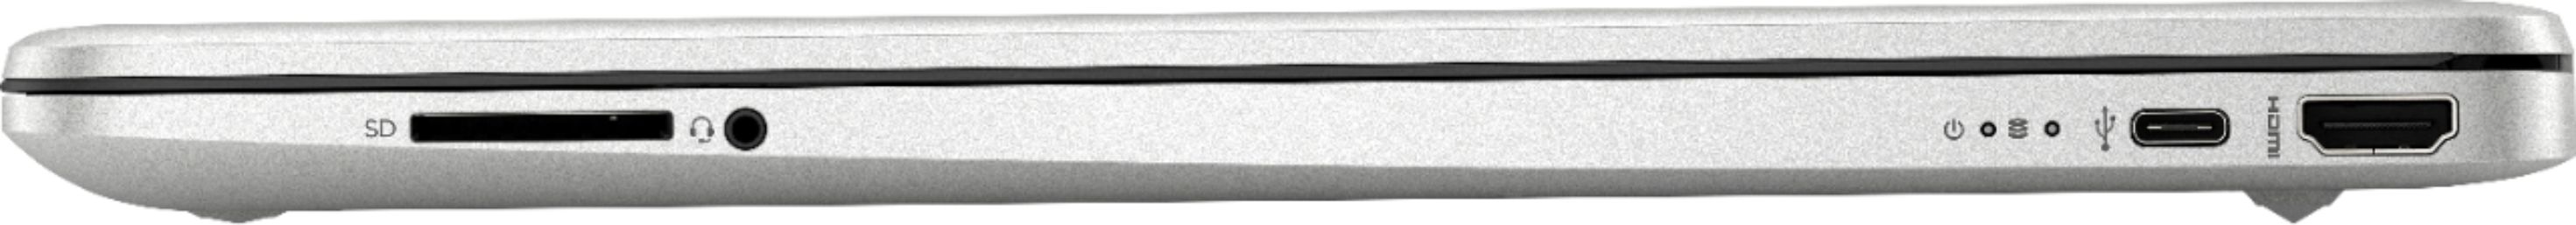 Pc portable HP 15-dw2010nk / i7 10è Gén / 24 Go / Silver